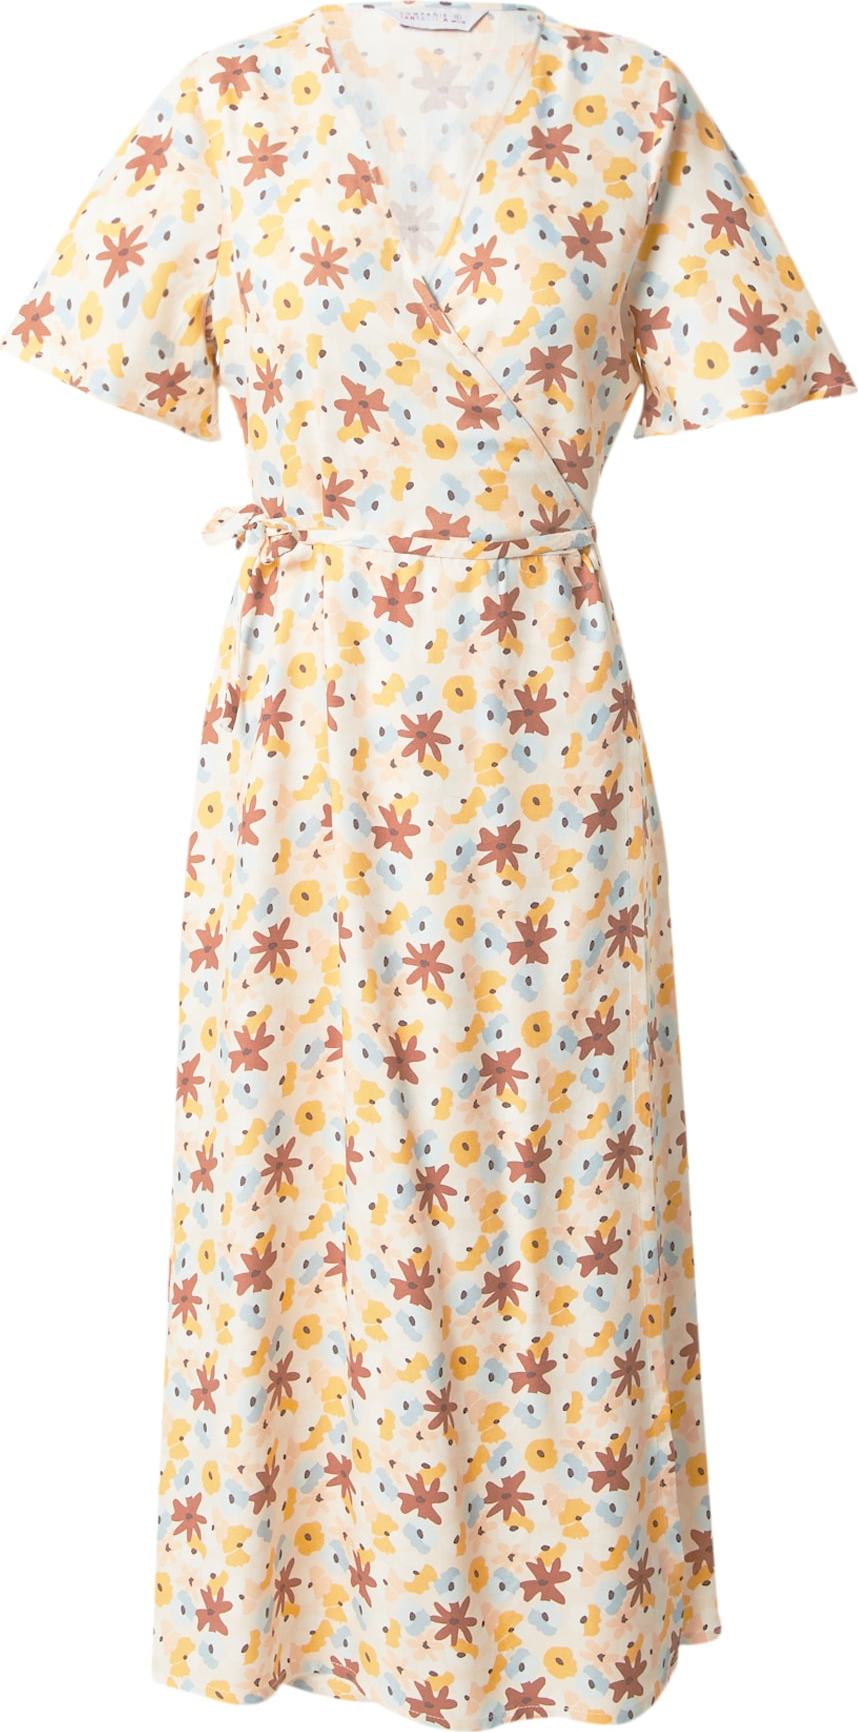 Compania Fantastica Letní šaty světlemodrá / rezavě hnědá / zlatě žlutá / pastelově žlutá